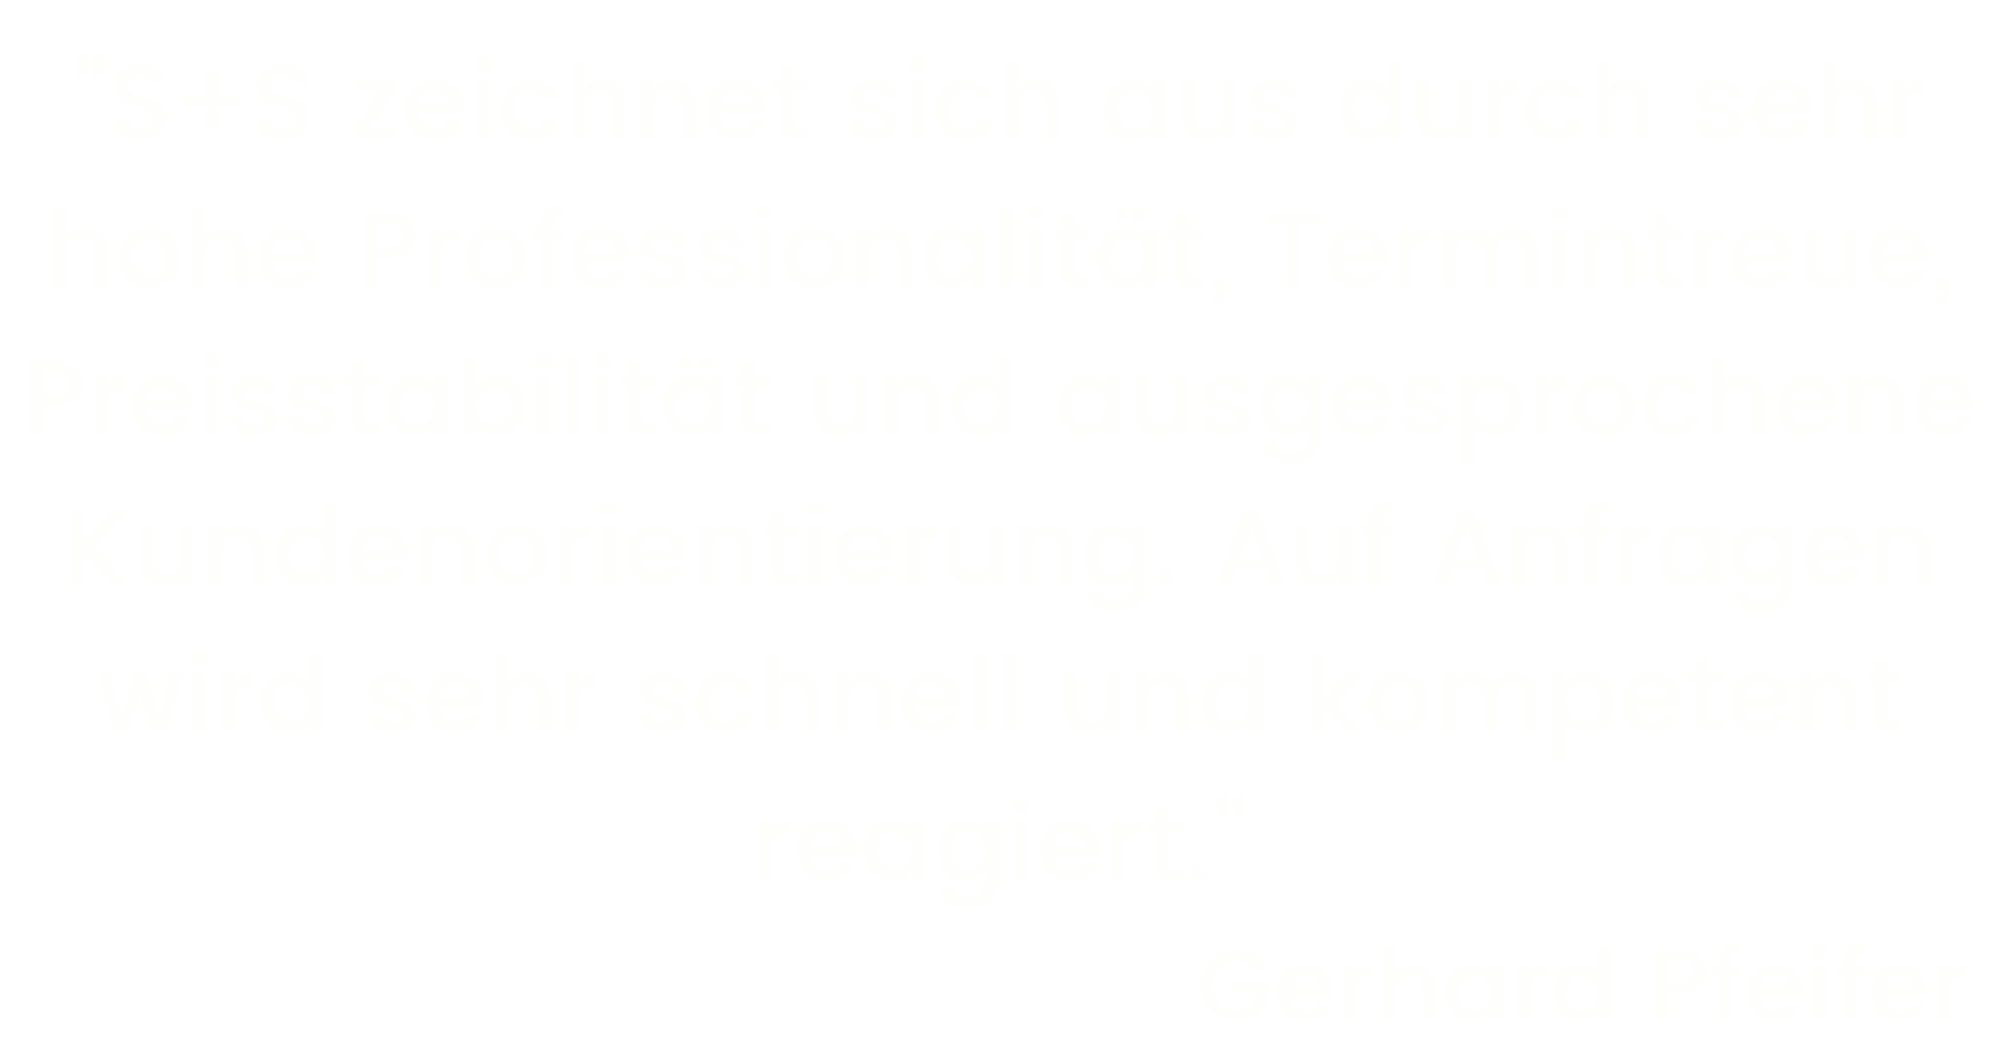 RG-Gerhard Pfeifer